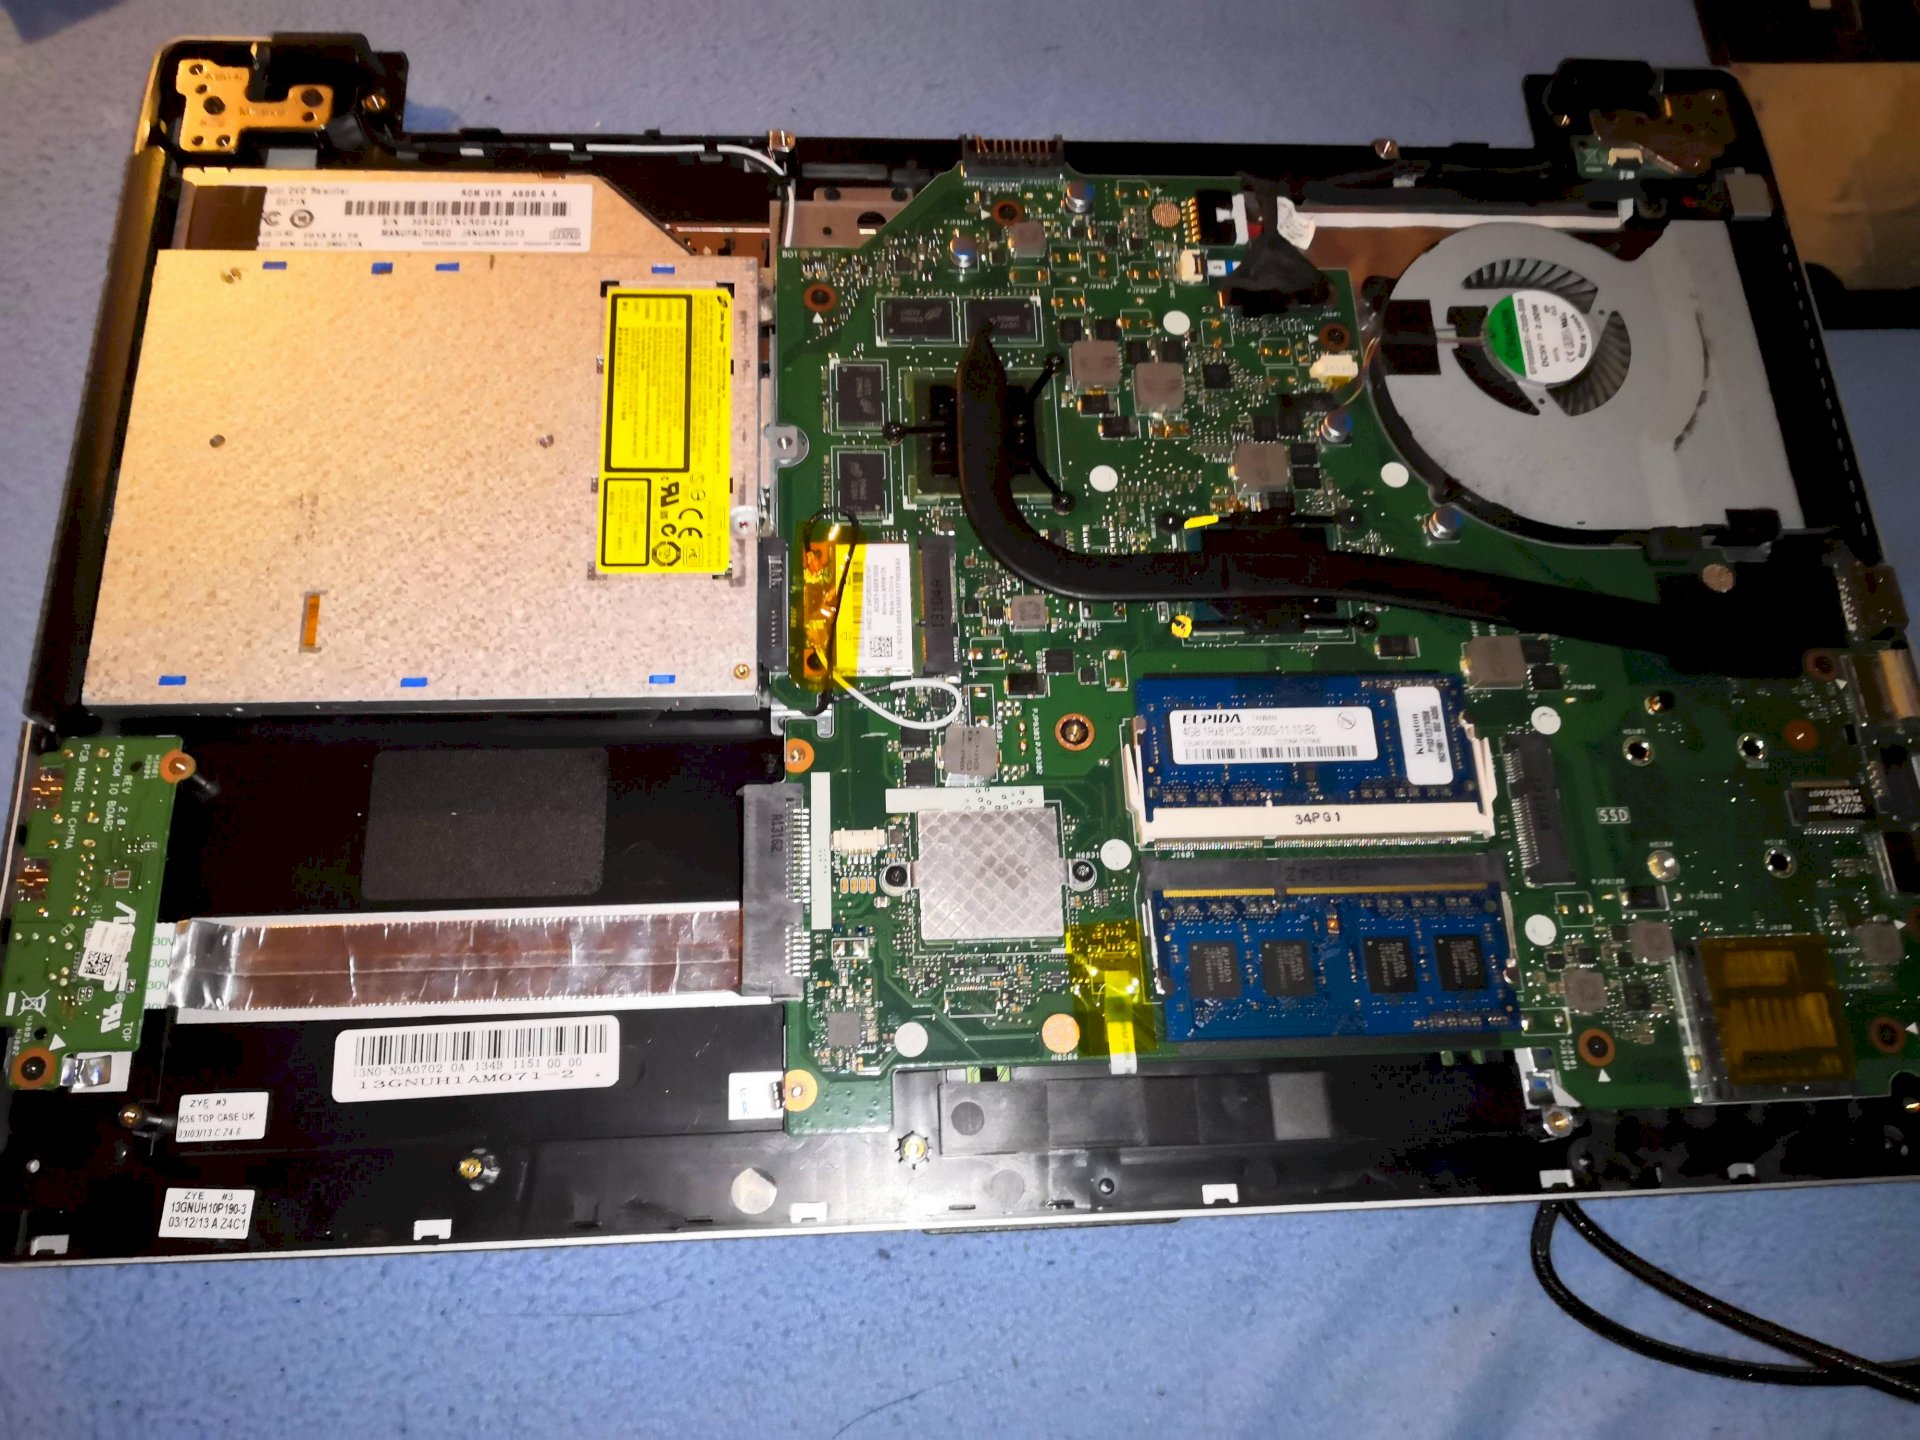 Laptop, 2 usb hubs broken on the side